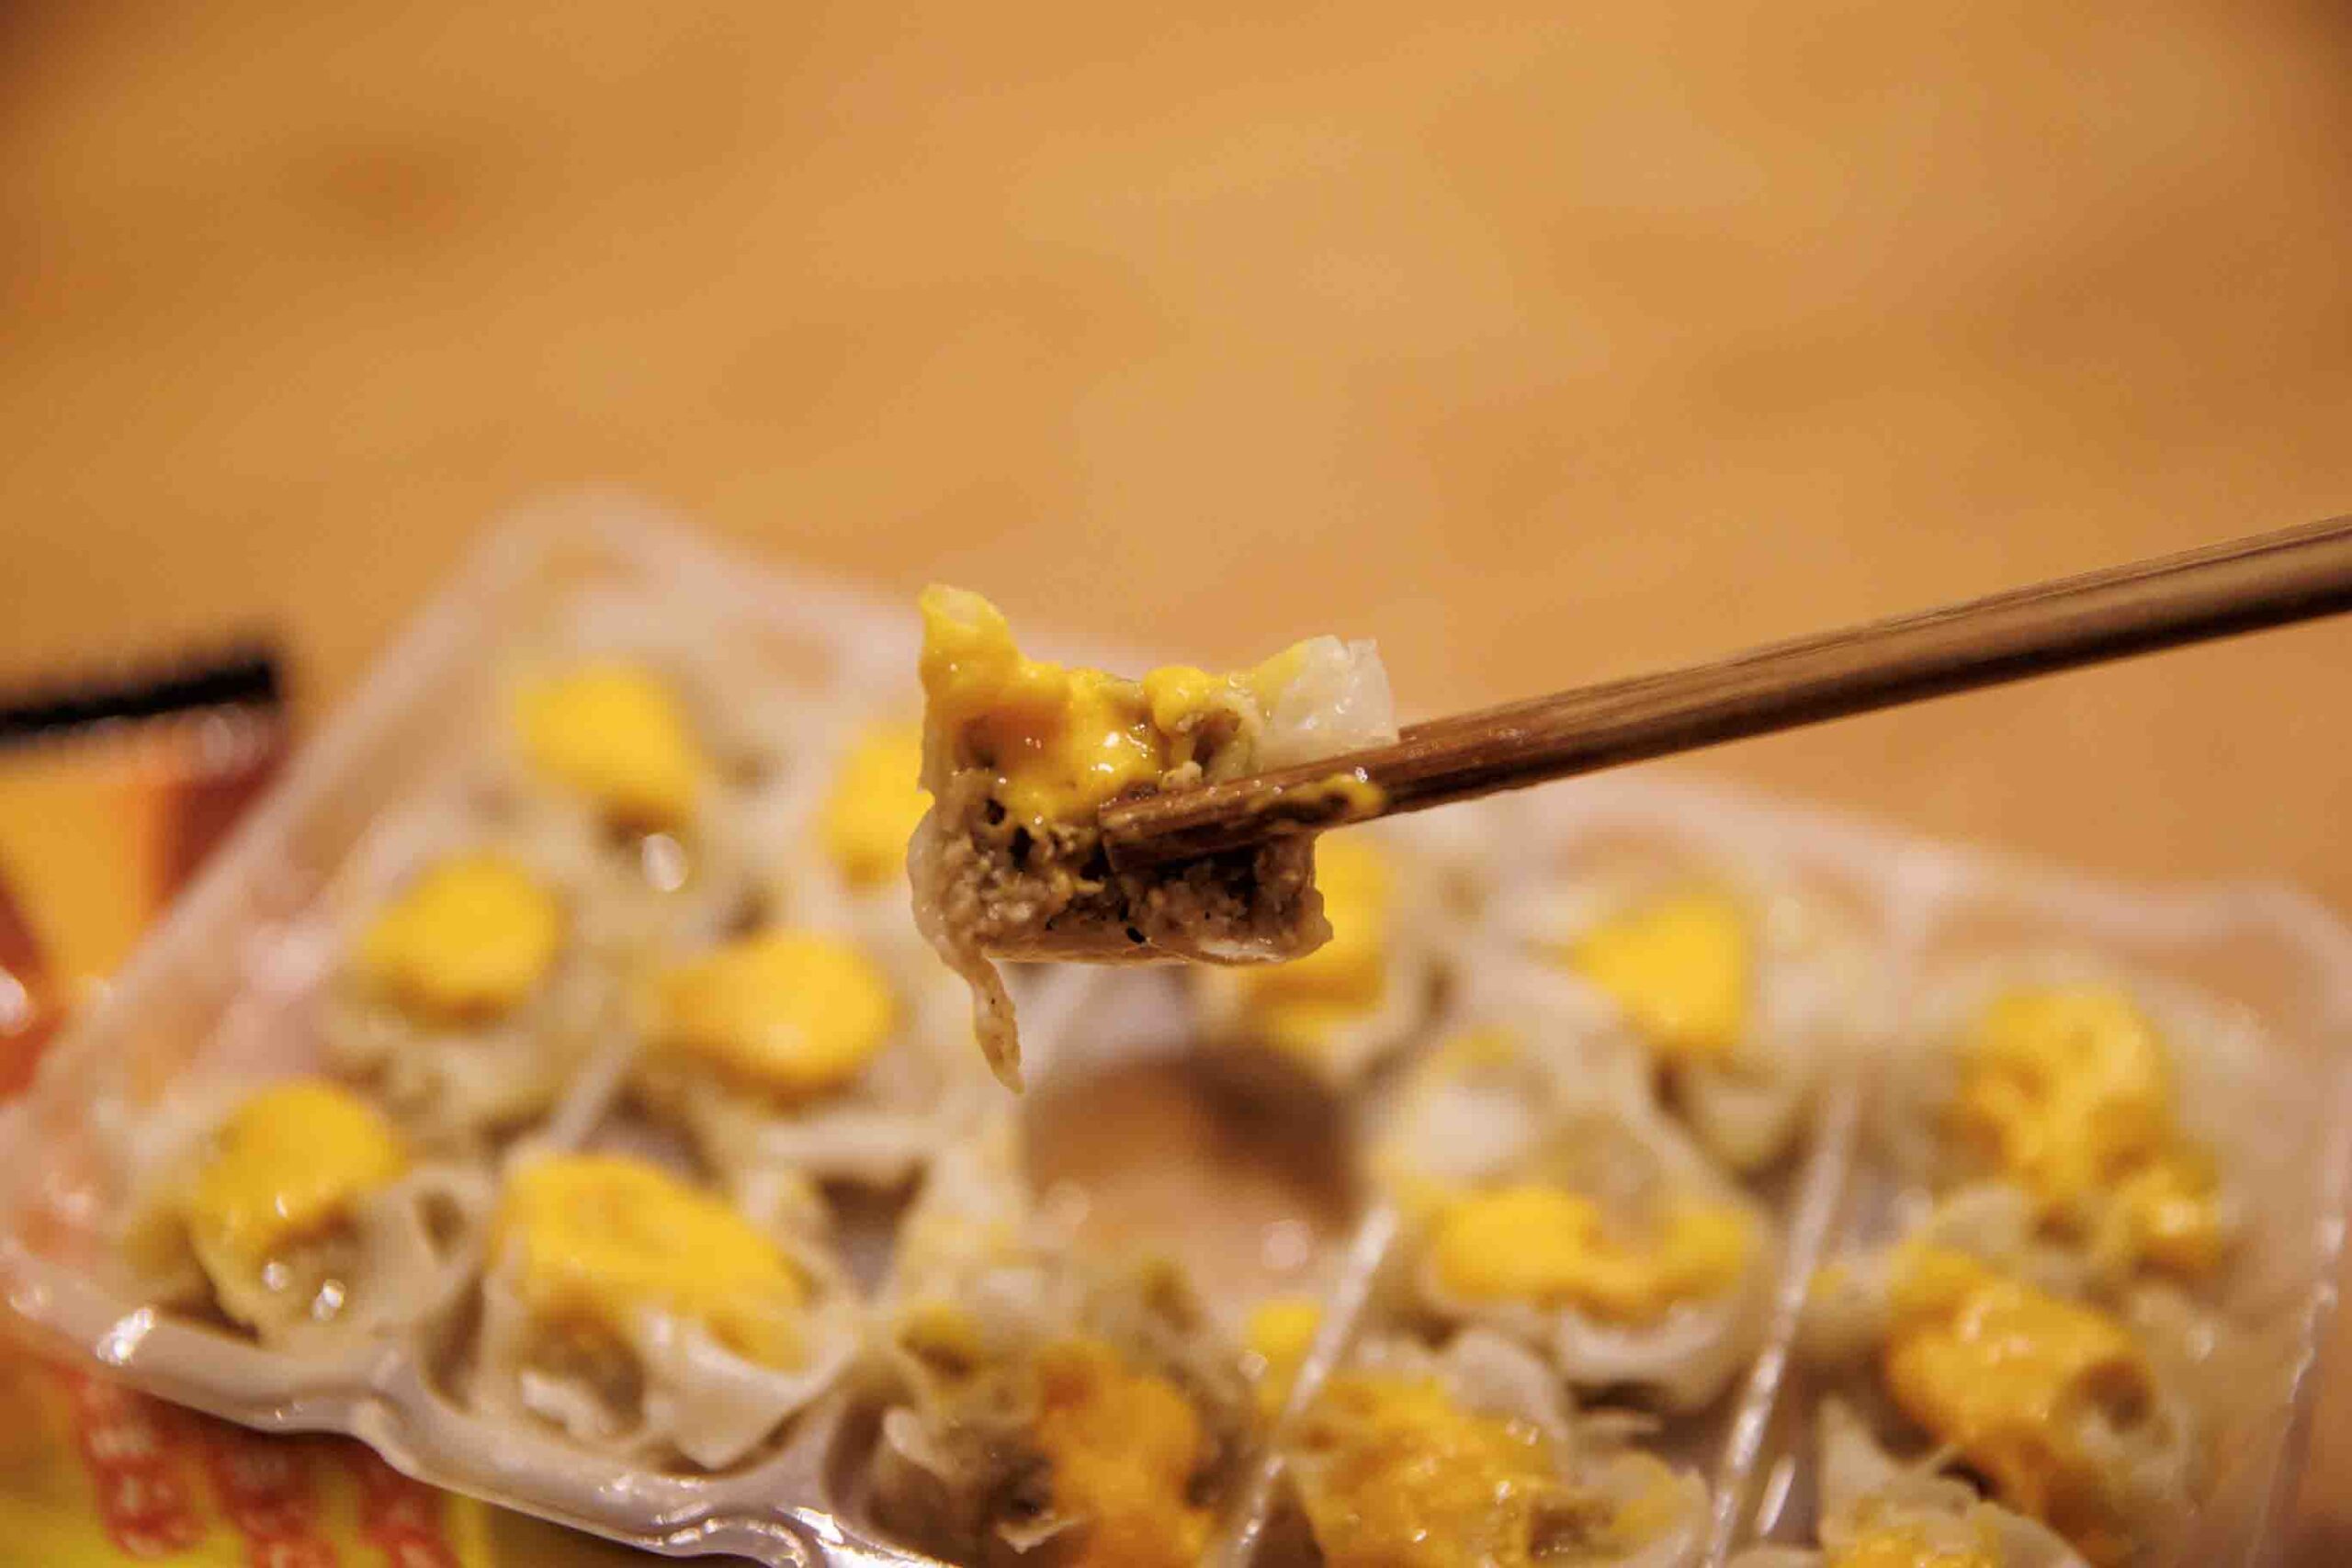 味の素の冷凍食品「濃厚チーズ焼売」を箸でつまんいる写真